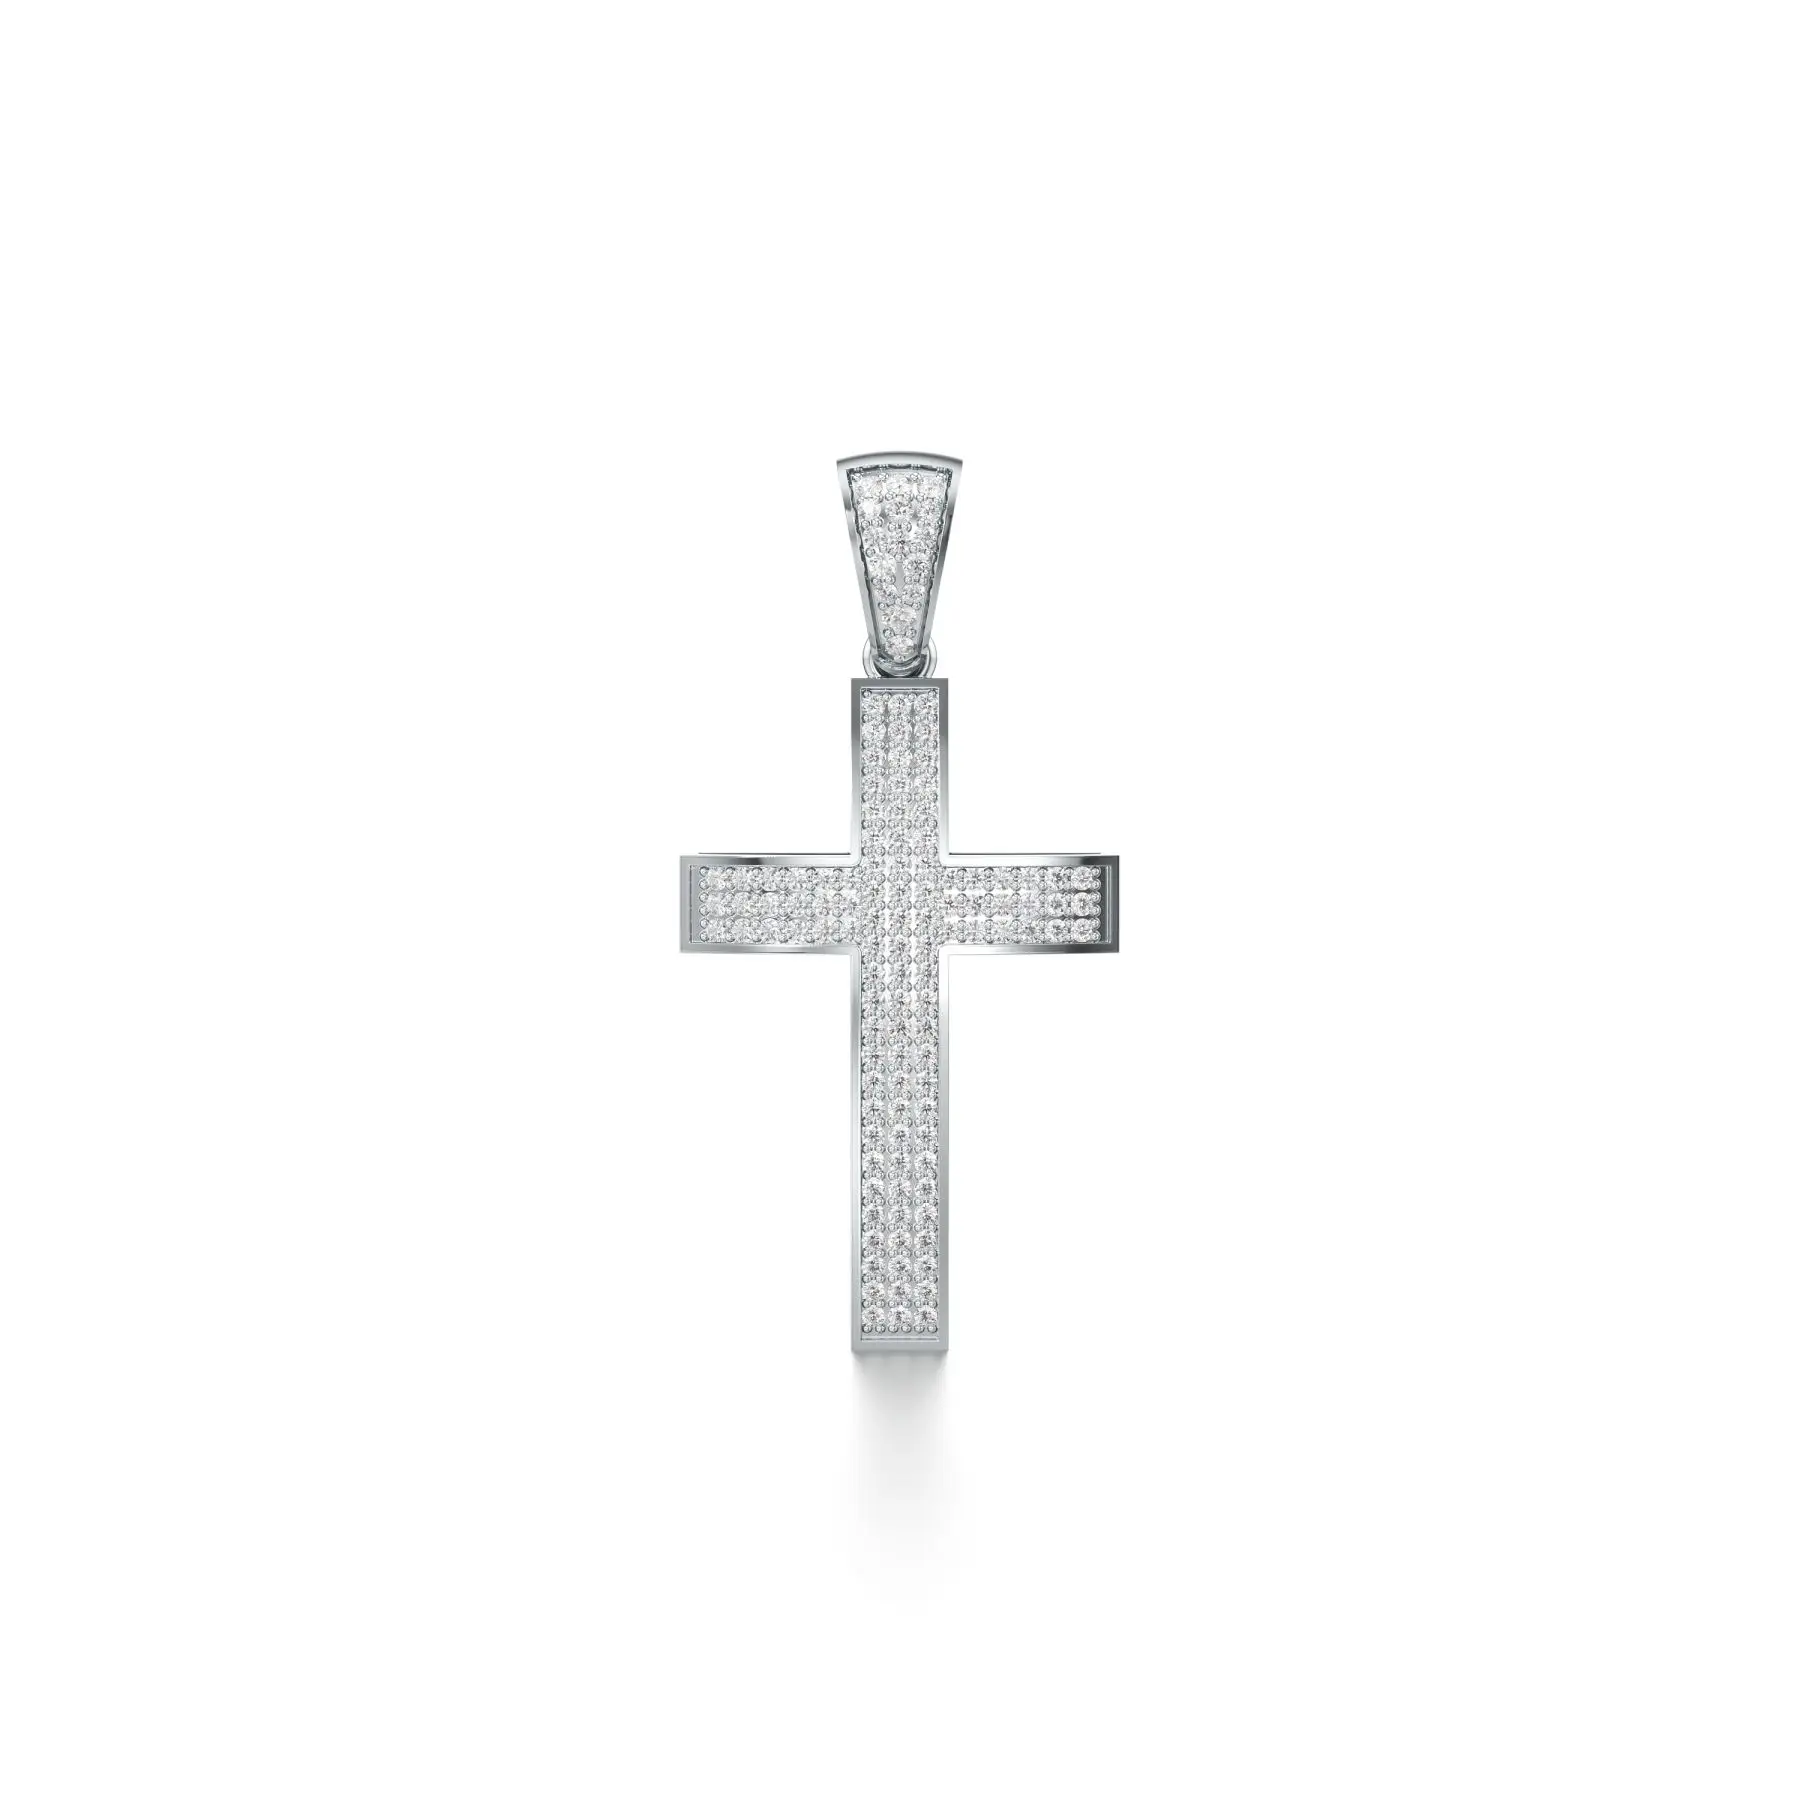 Godly Cross Diamond Pendant in White 10k Gold